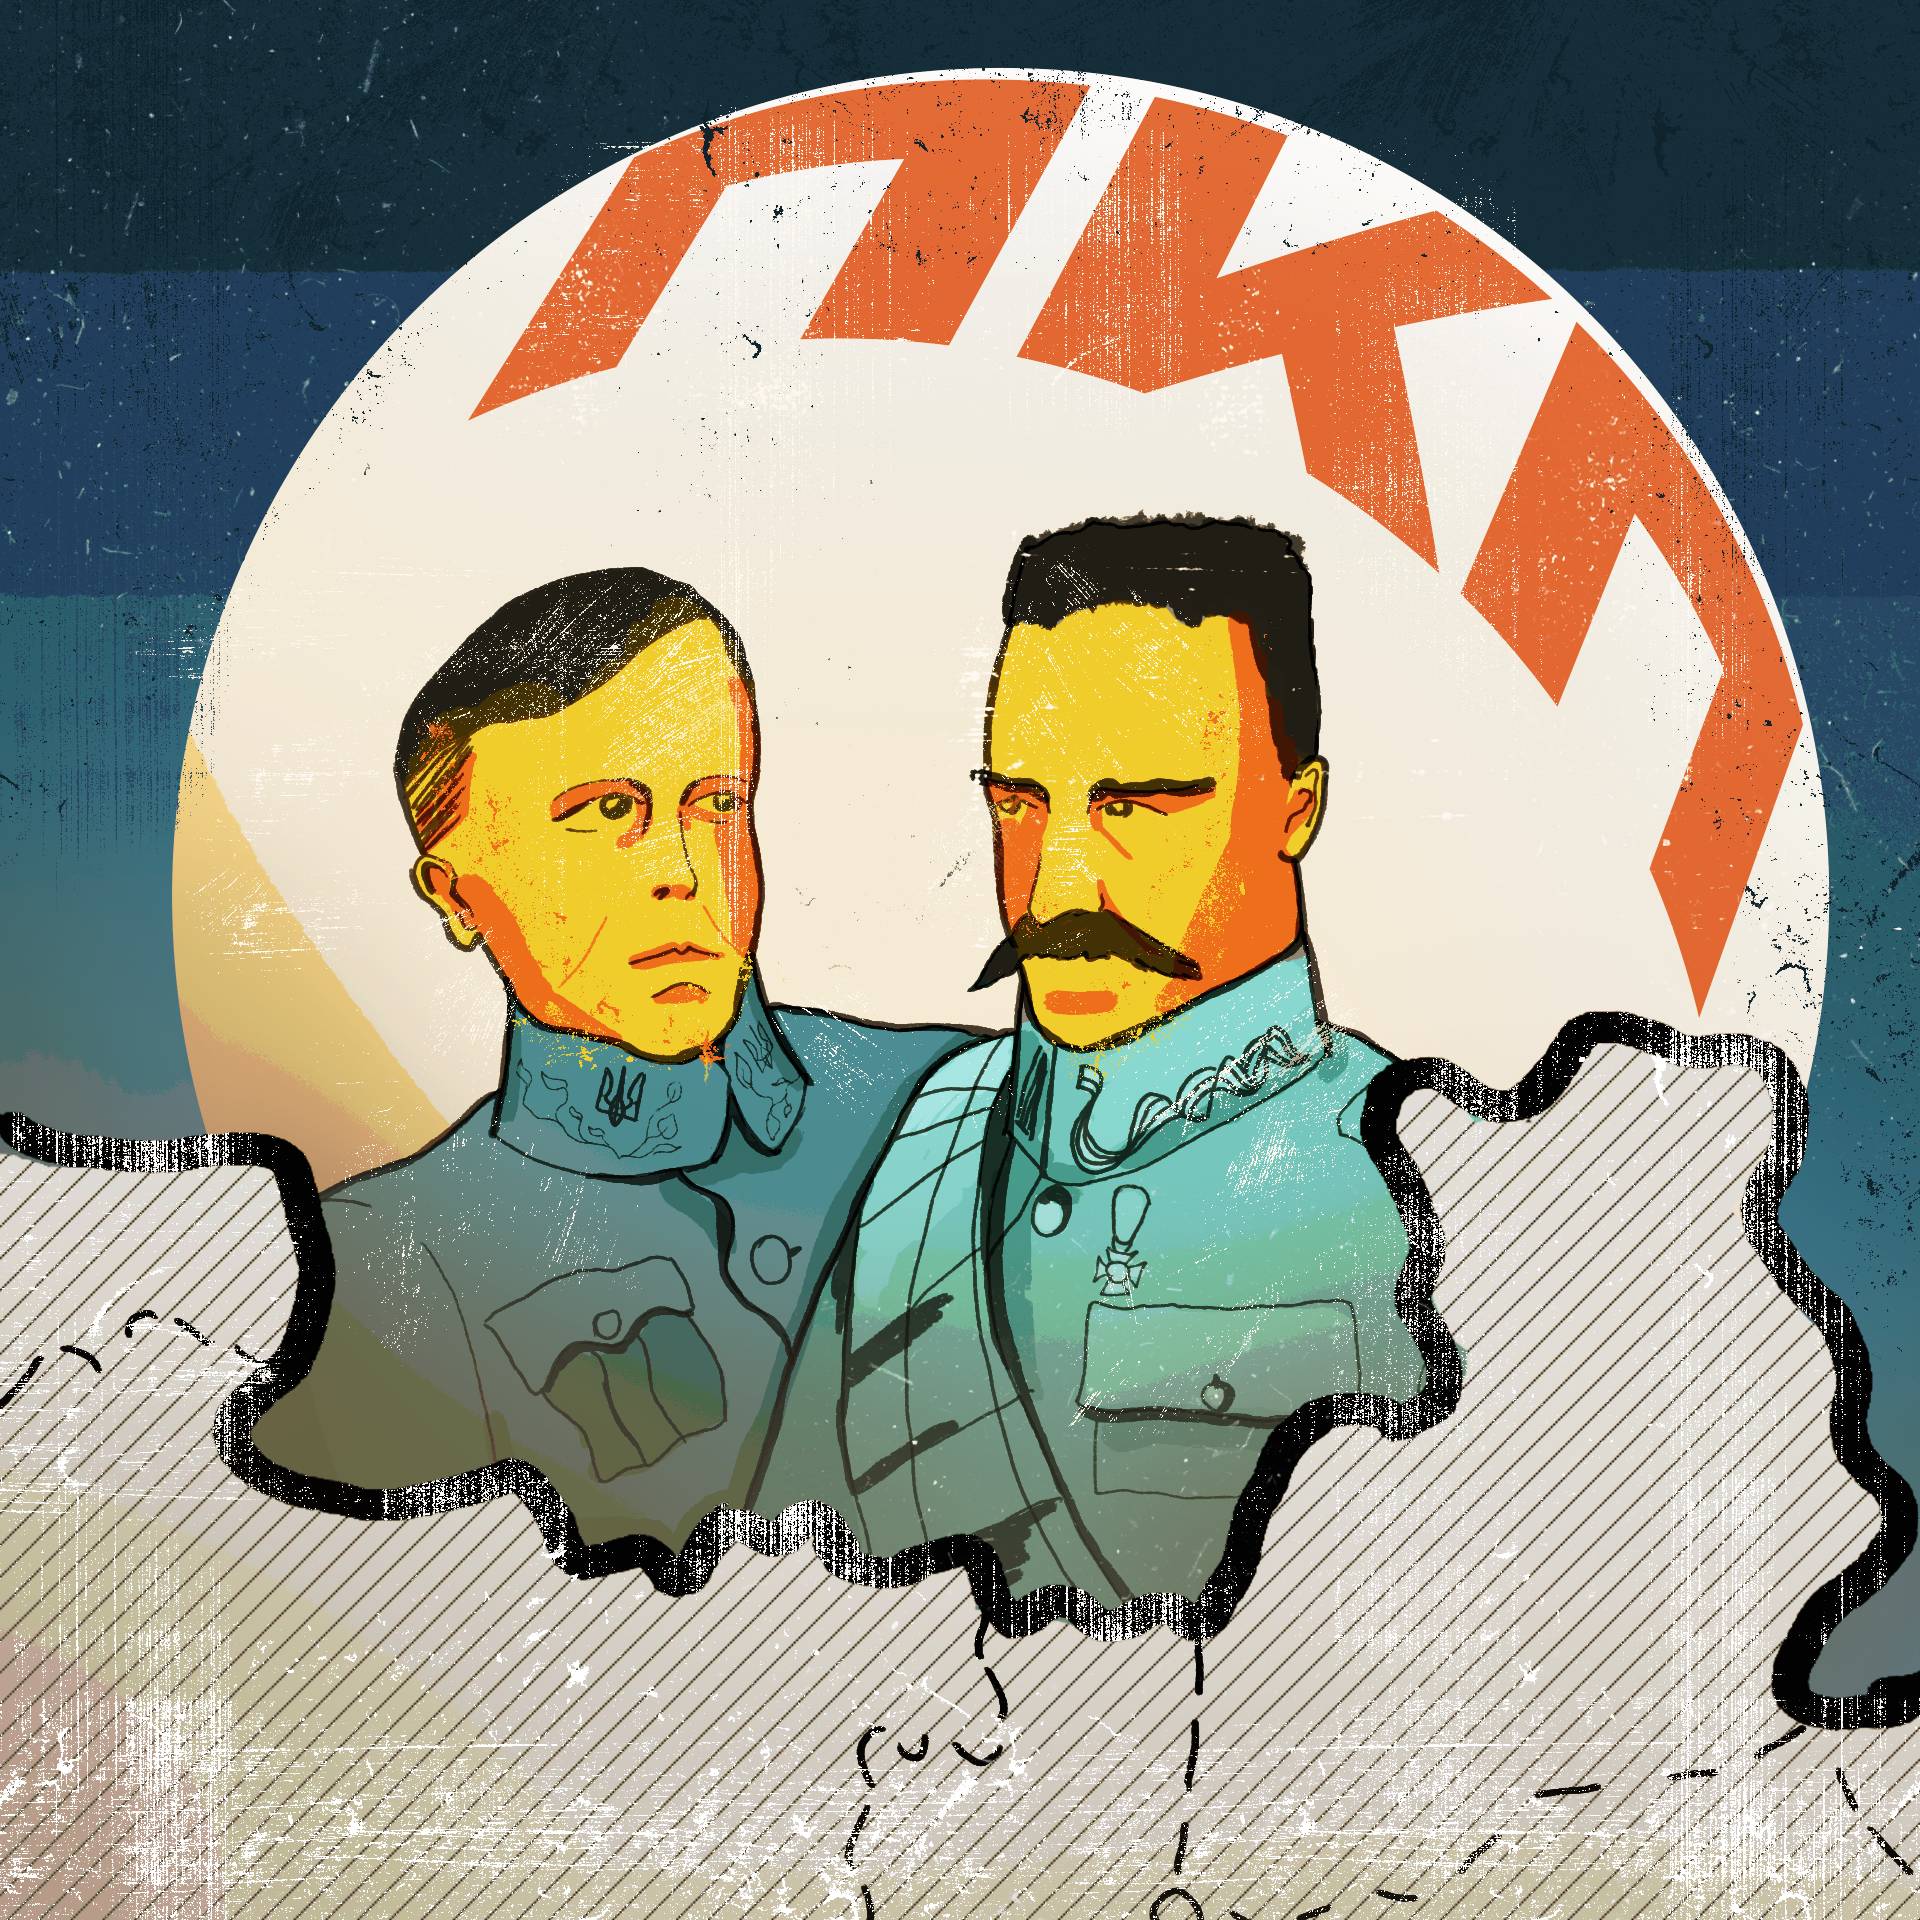 Ilustracja - obok siebie znajdują się Symon Petlura i Józef Piłsudski, obaj są w mundurach, w tle znajduje się okrąg z napisem "PKP" cyrylicą, na pierwszym planie jest kontur mapy z granicami Ukraińskiej Republiki Ludowej